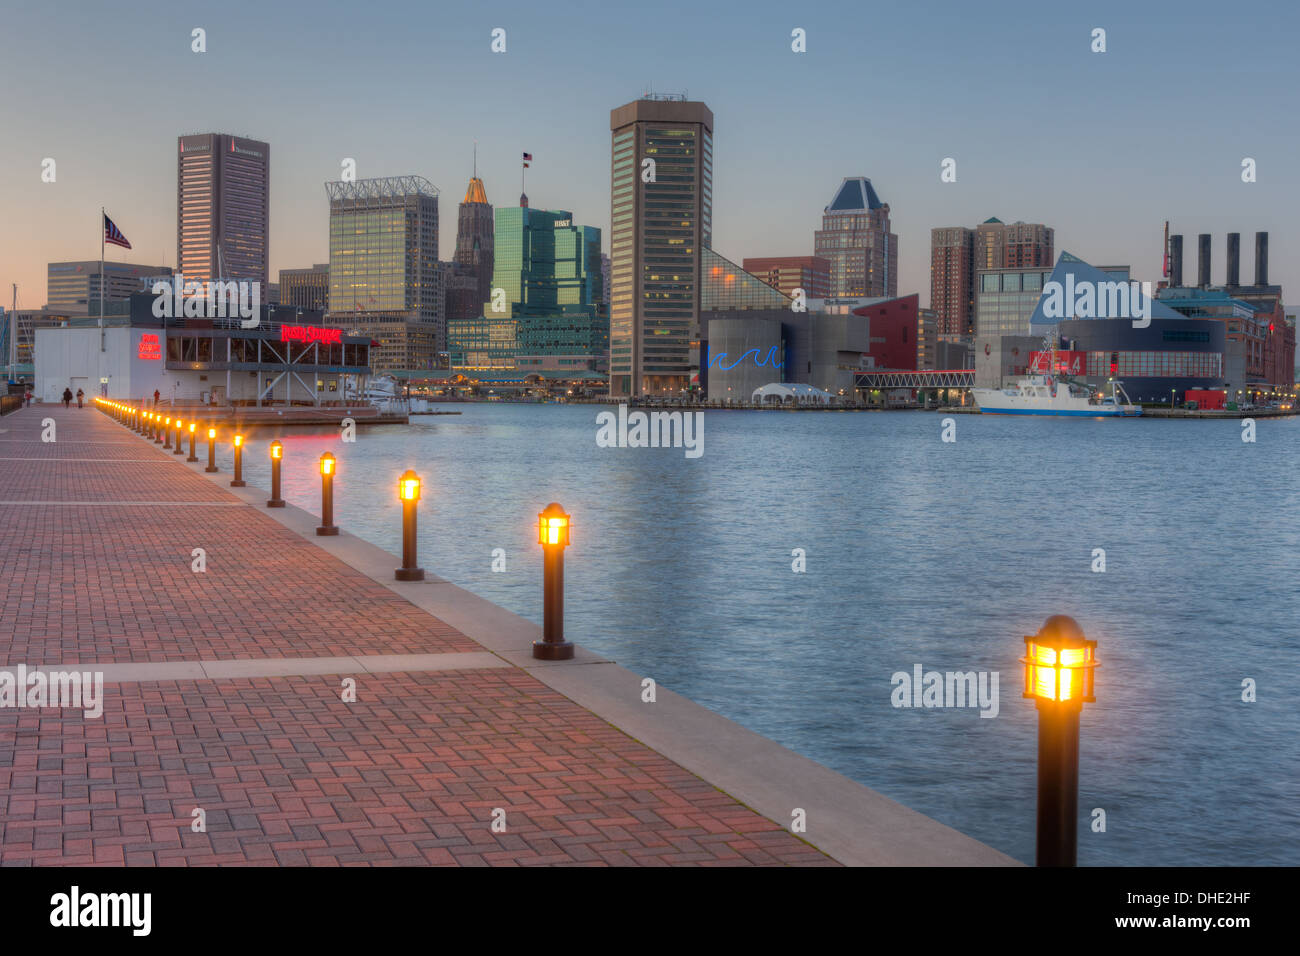 Le ciel commence à s'assombrir sur la skyline de Baltimore, Maryland au coucher du soleil. Banque D'Images